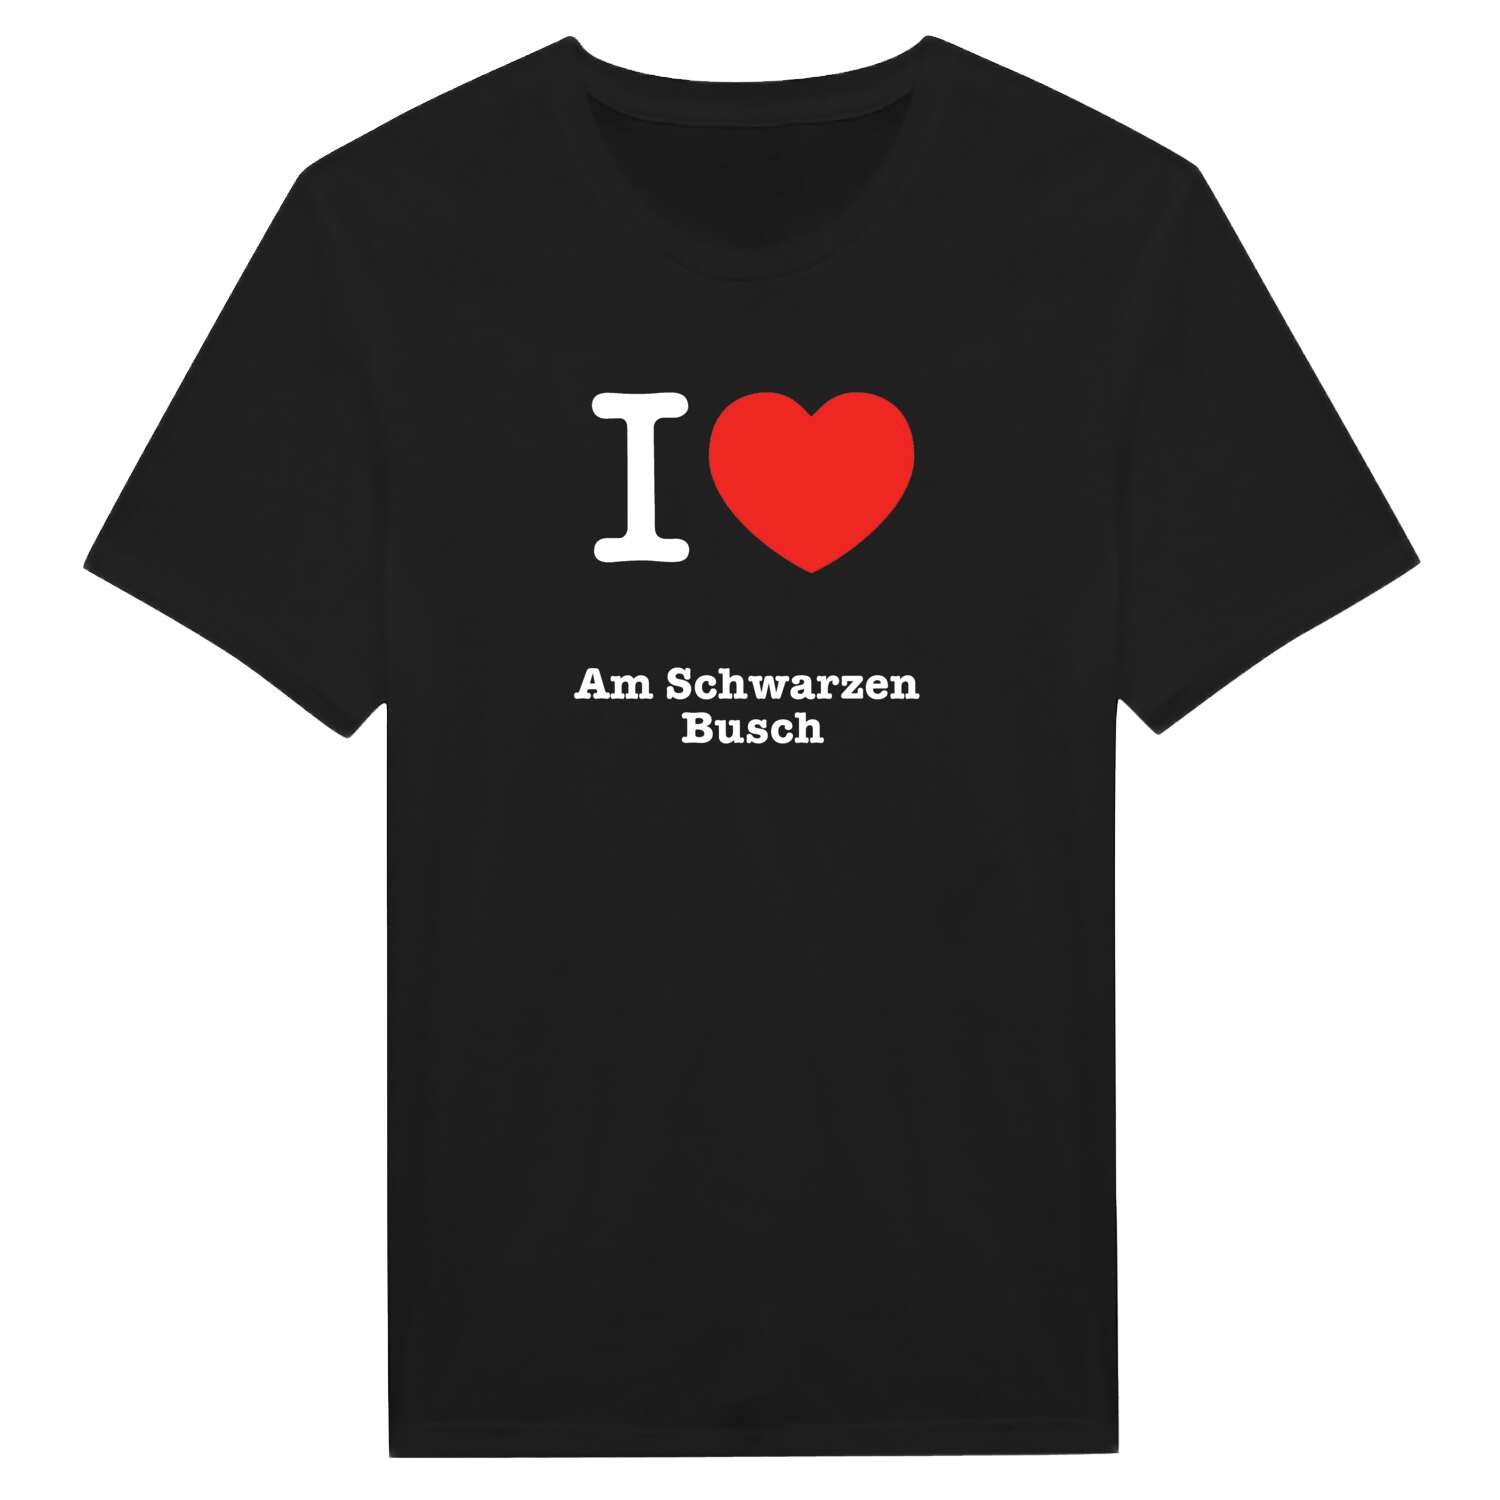 Am Schwarzen Busch T-Shirt »I love«